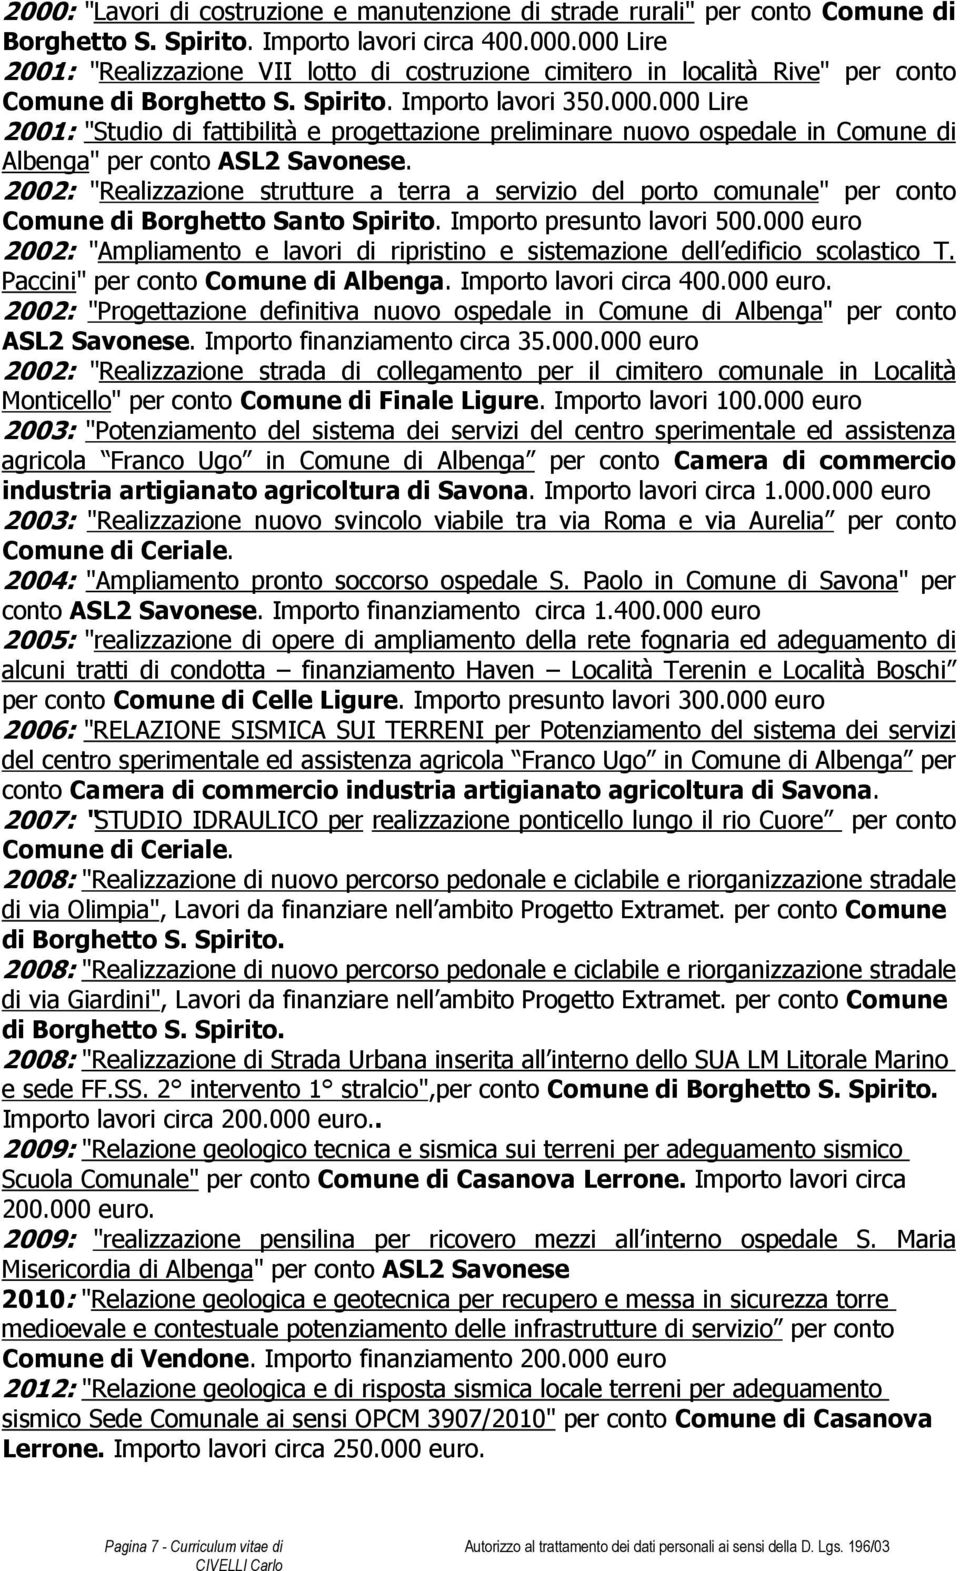 2002: "Realizzazione strutture a terra a servizio del porto comunale" per conto Comune di Borghetto Santo Spirito. Importo presunto lavori 500.